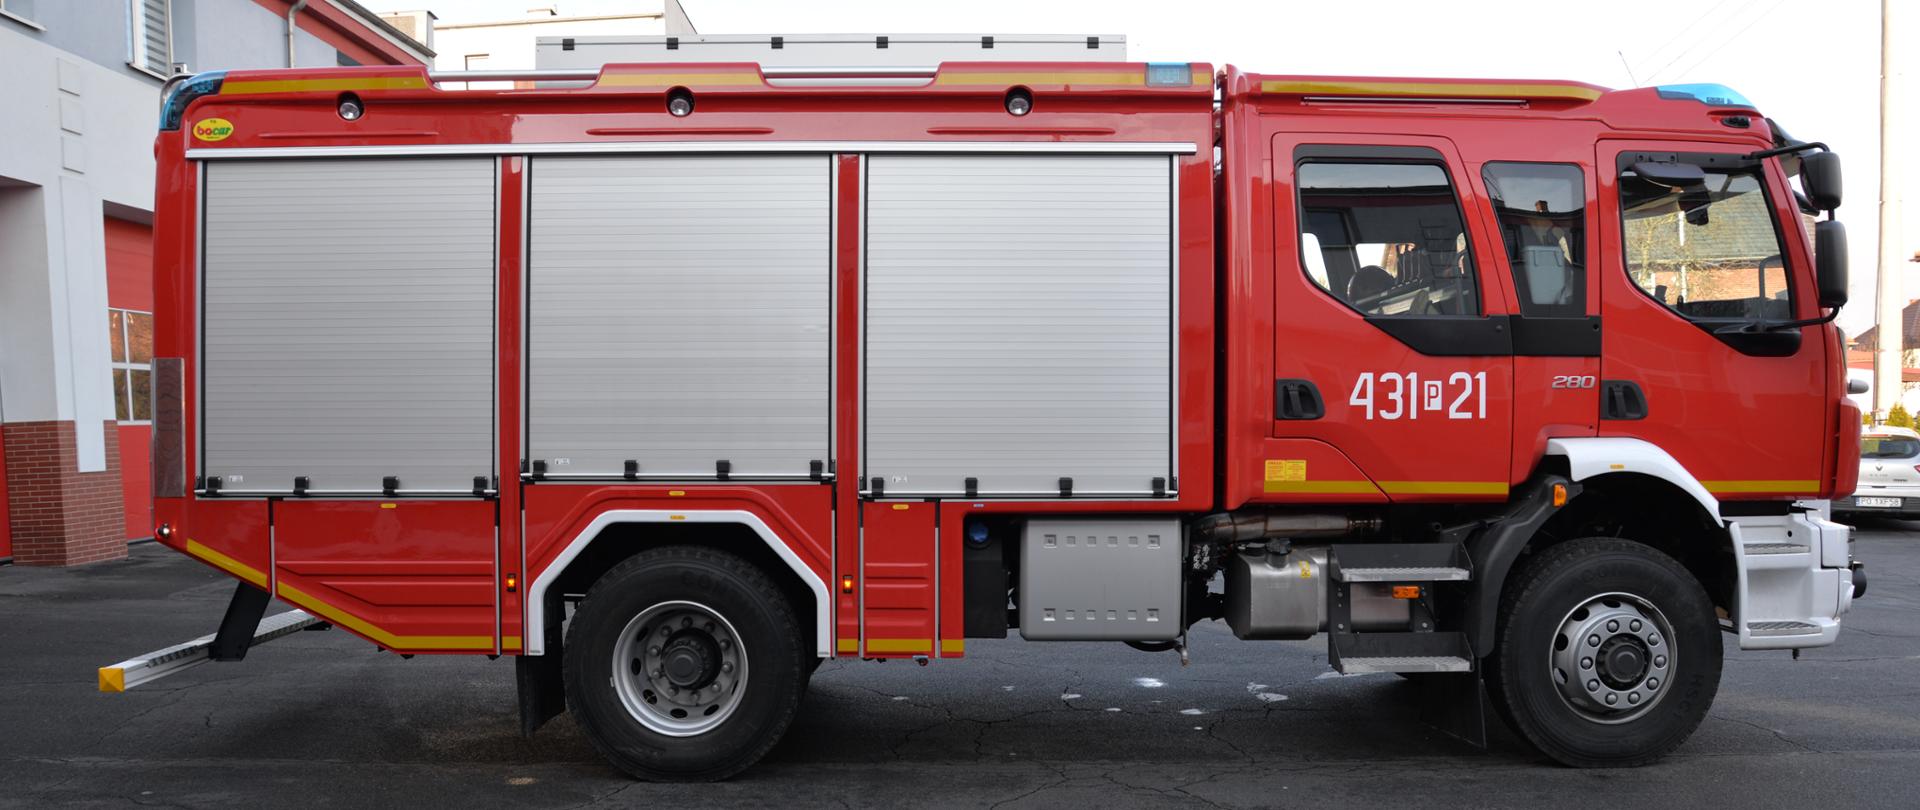 Zdjęcie przedstawia nowy samochód straży pożarnej. Samochód jest czerwony, stoi na placu wewnętrznym komendy straży pożarnej.